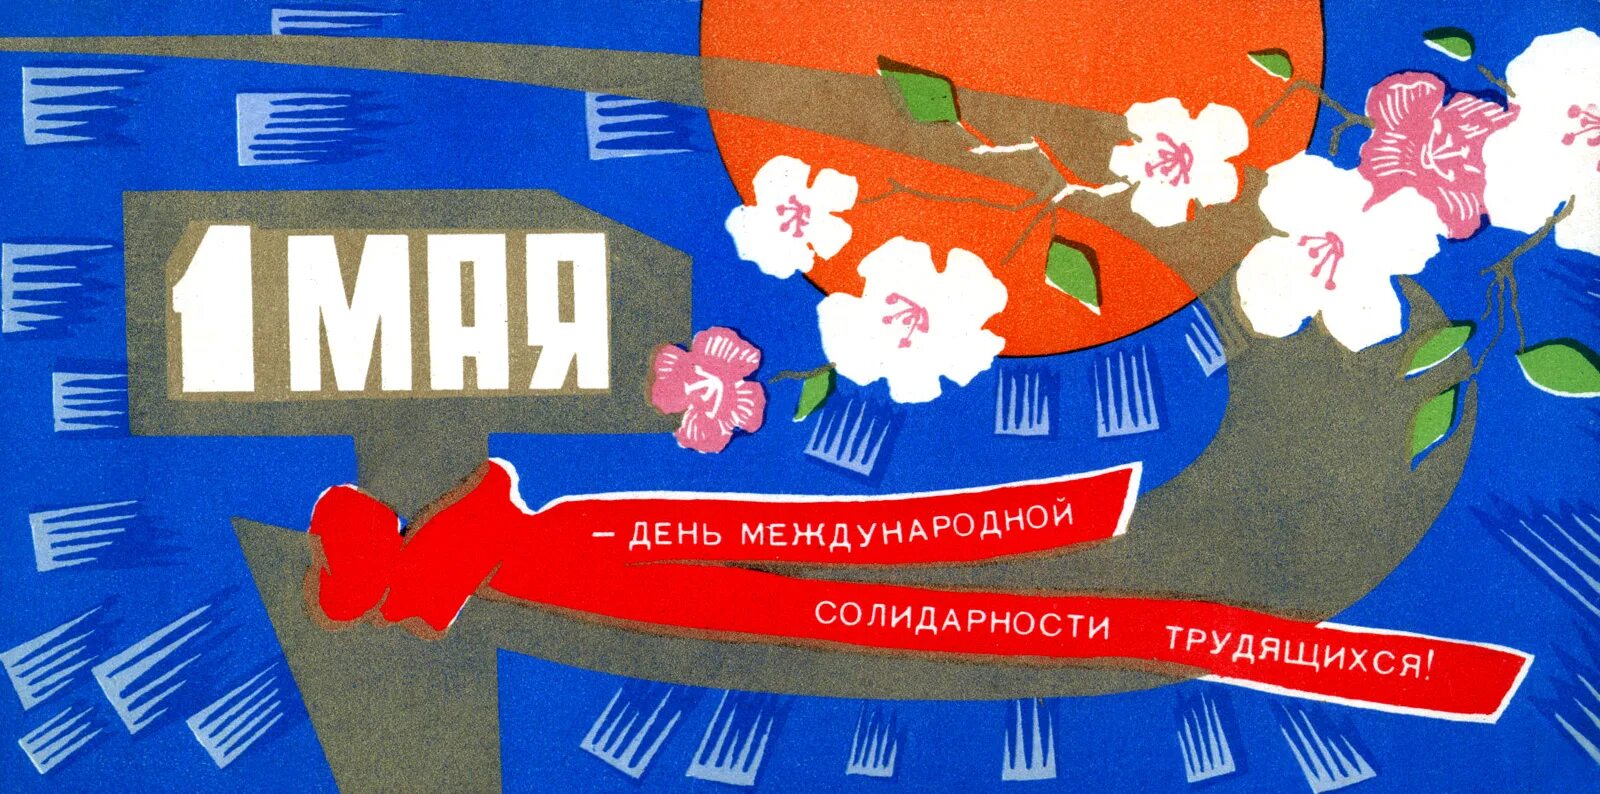 1 мая международный. 1 Мая день солидарности трудящихся. 1 Мая плакат. День международной солидарности трудящихся советские открытки. Международный день солидарности трудящихся 1 мая плакат.